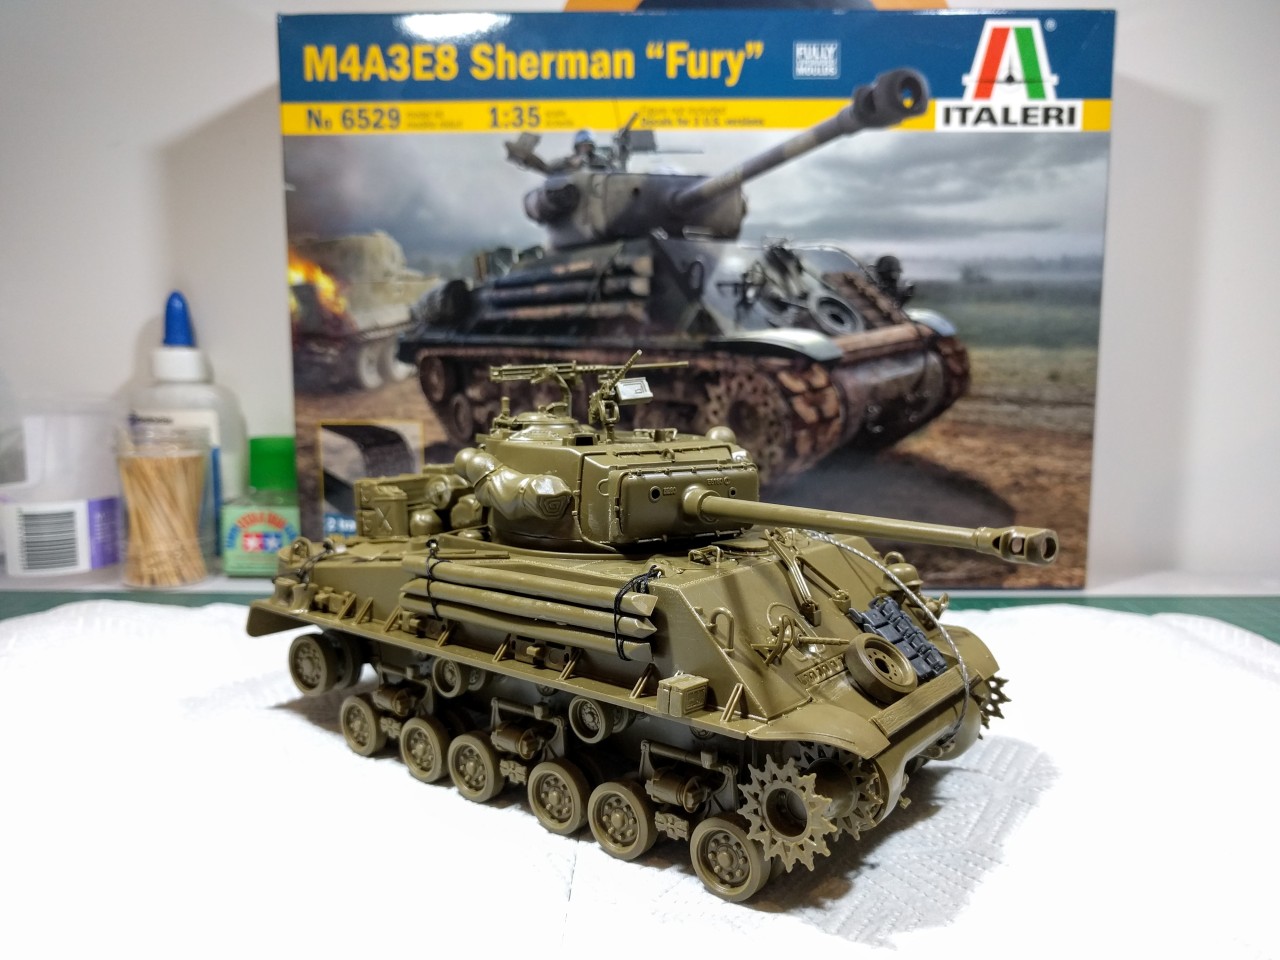 ITALERI M4A3E8 Sherman Tank Fury 6529 1:35 Military Model Kit 